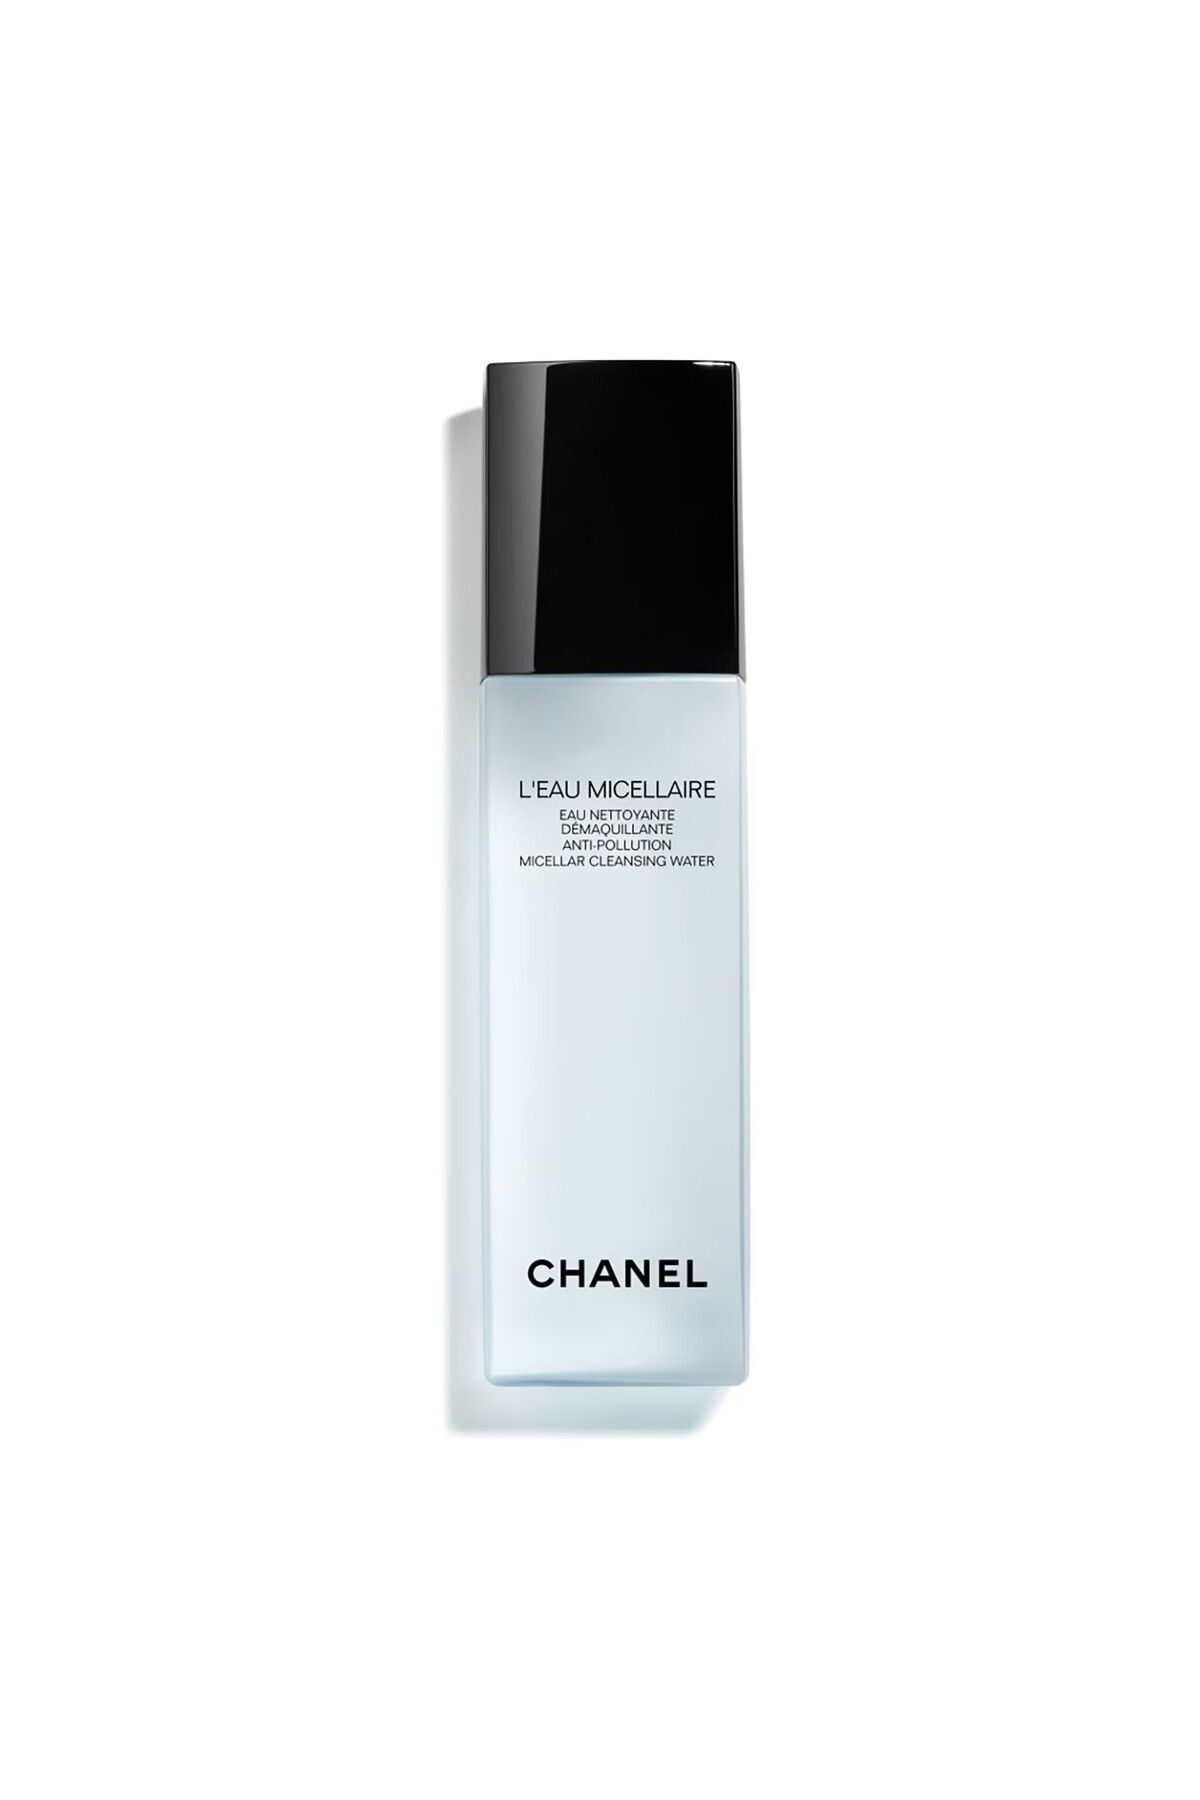 Chanel L’EAU MICELLAIRE-Canlandırıcı Arındırıcı Misel Su 150ml